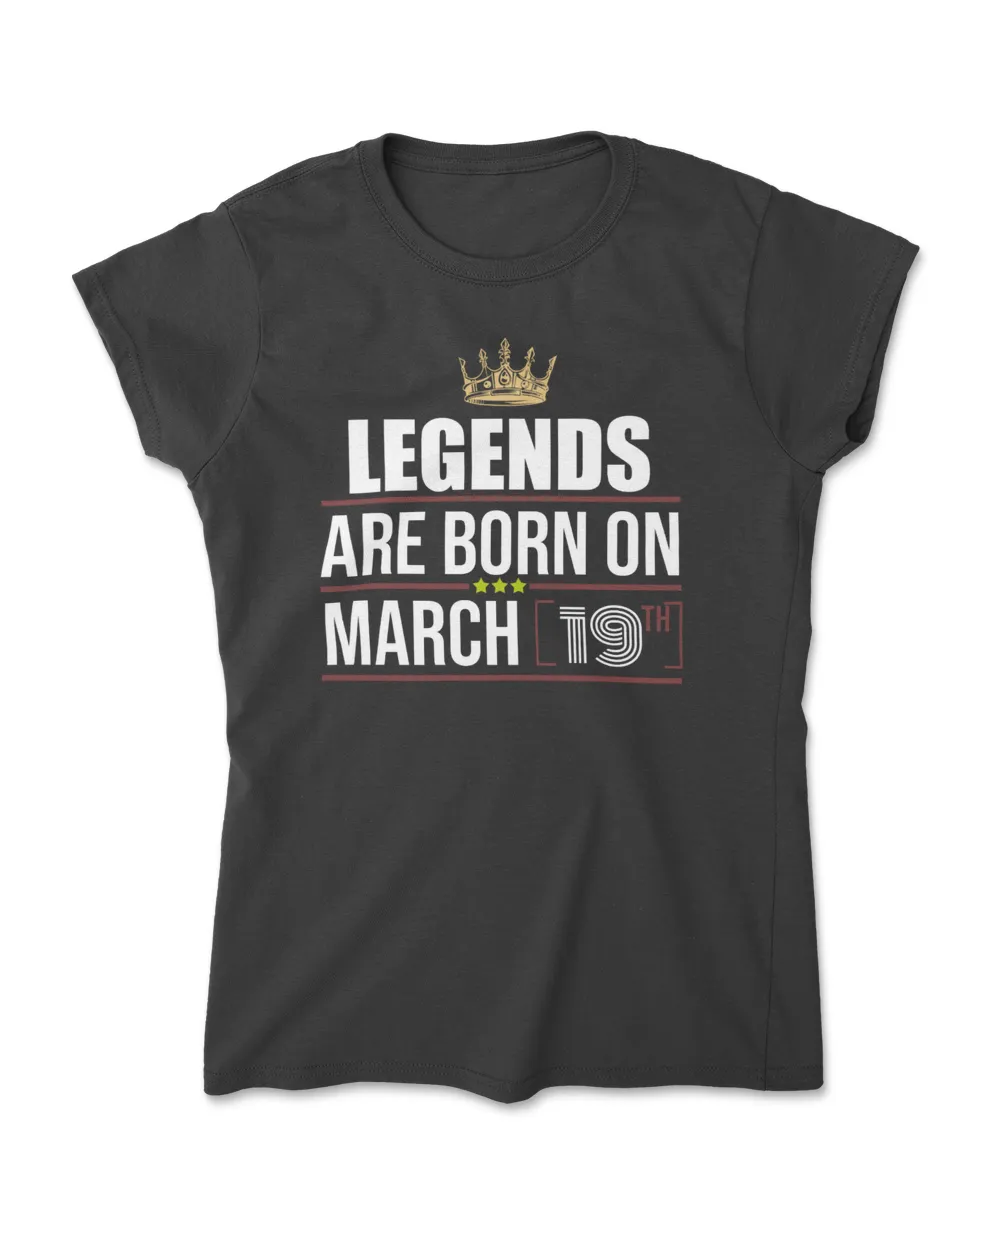 March 19  legends are born